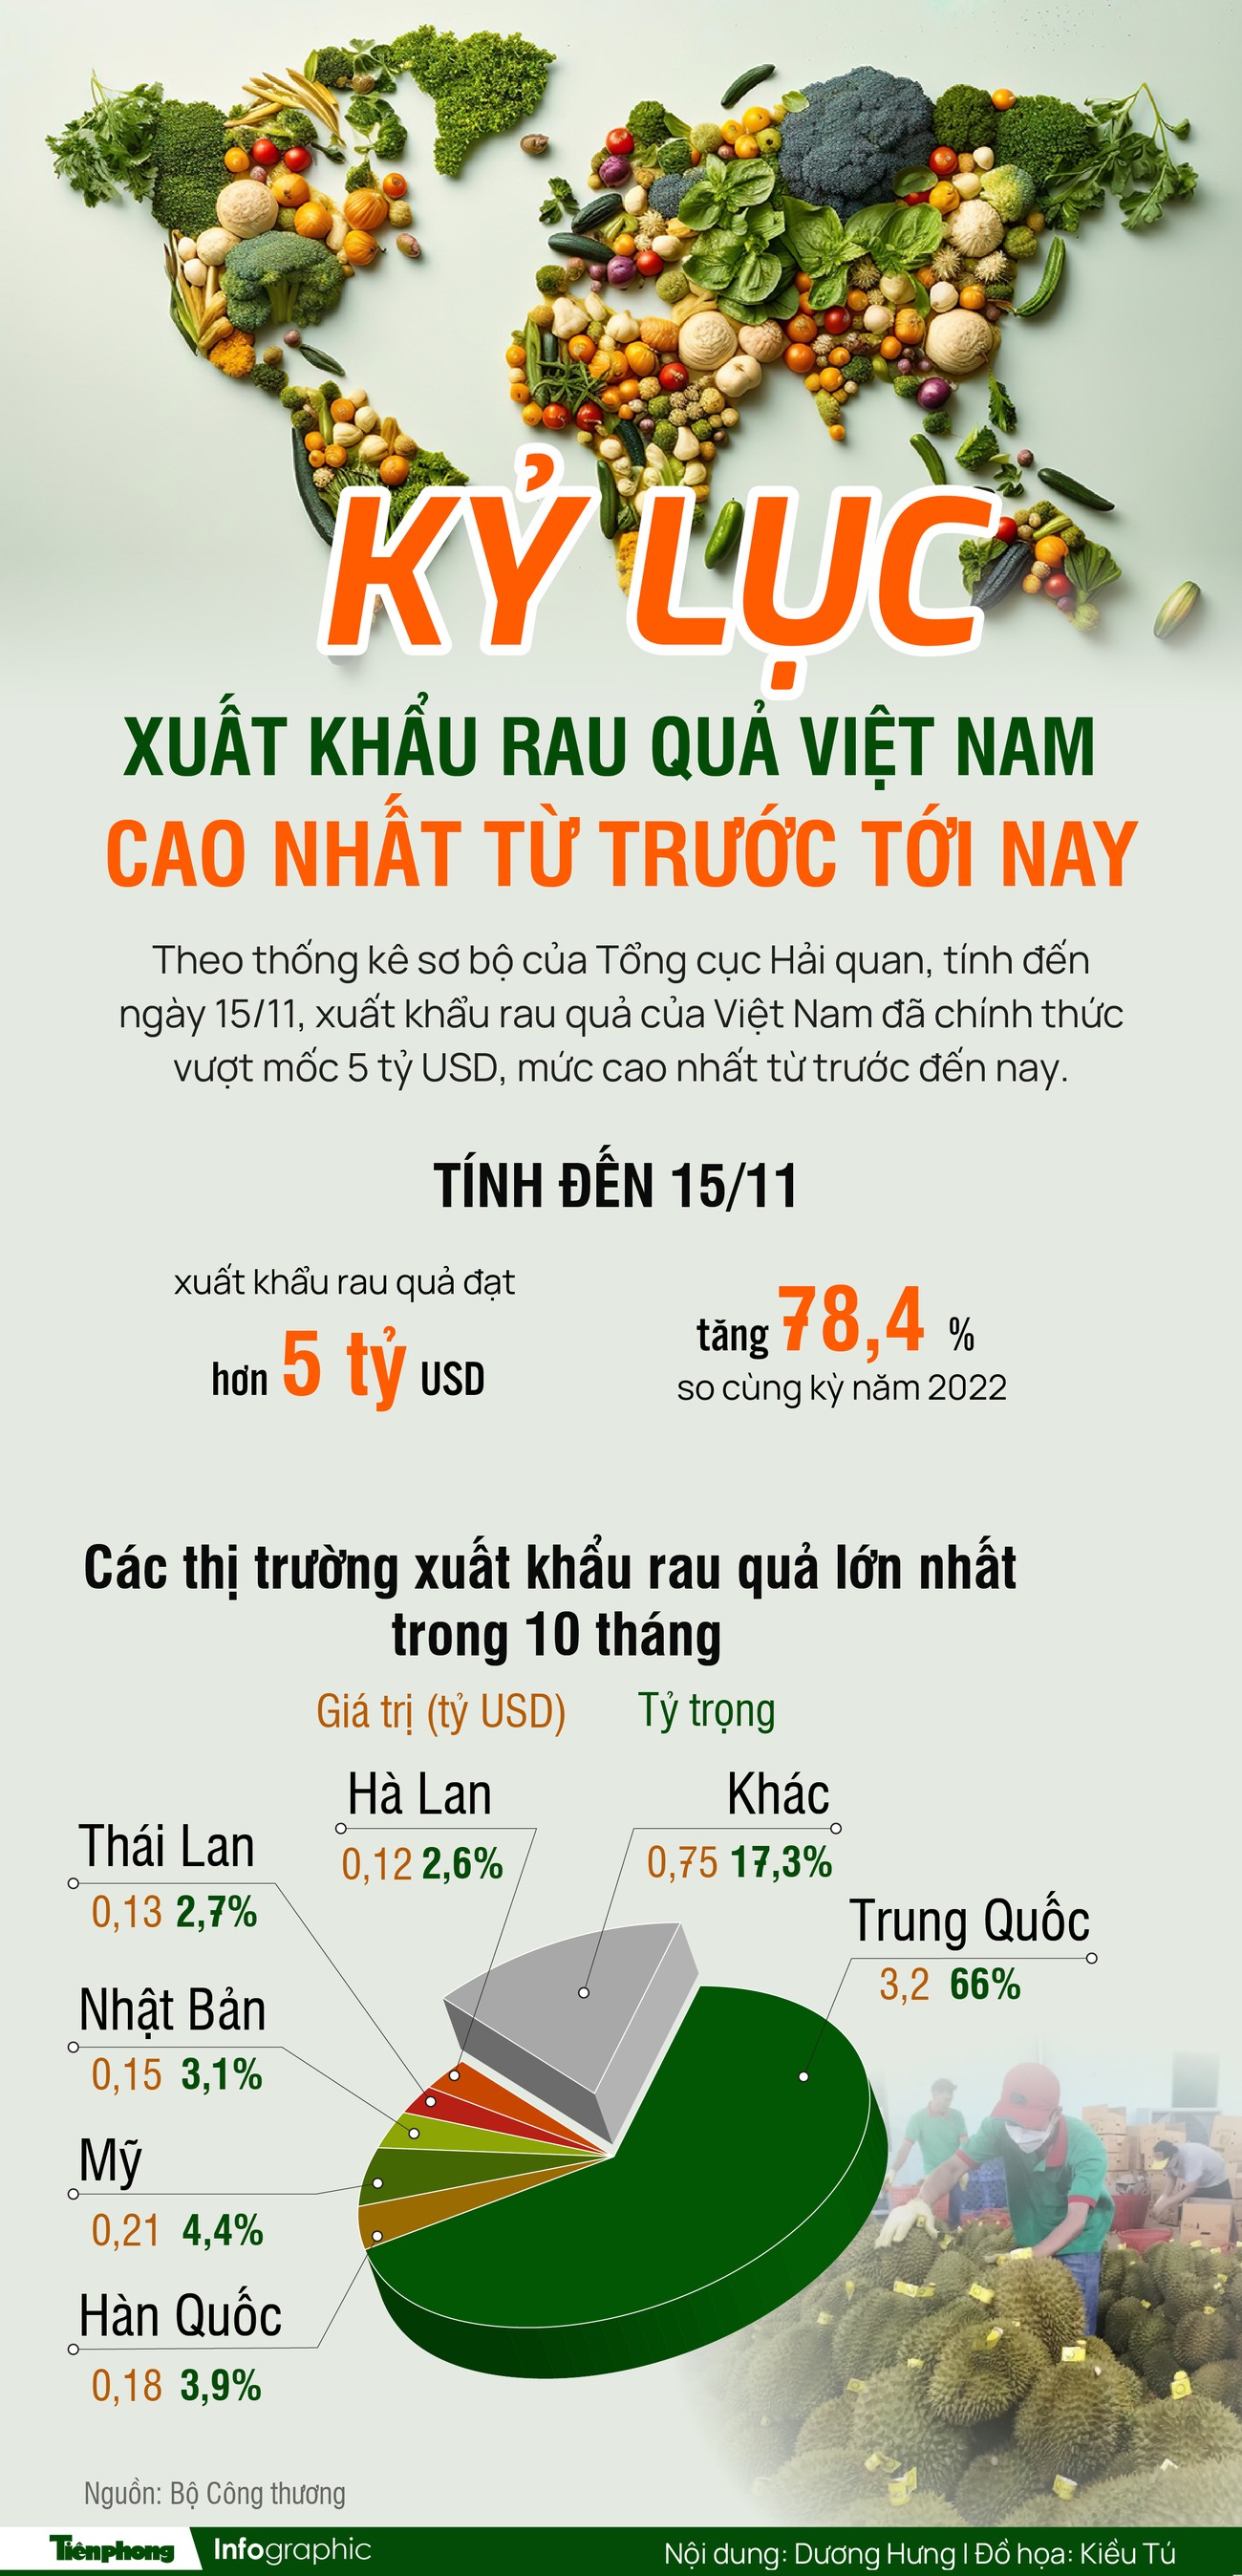 Kỷ lục xuất khẩu rau quả Việt Nam cao nhất từ trước tới nay - Ảnh 1.